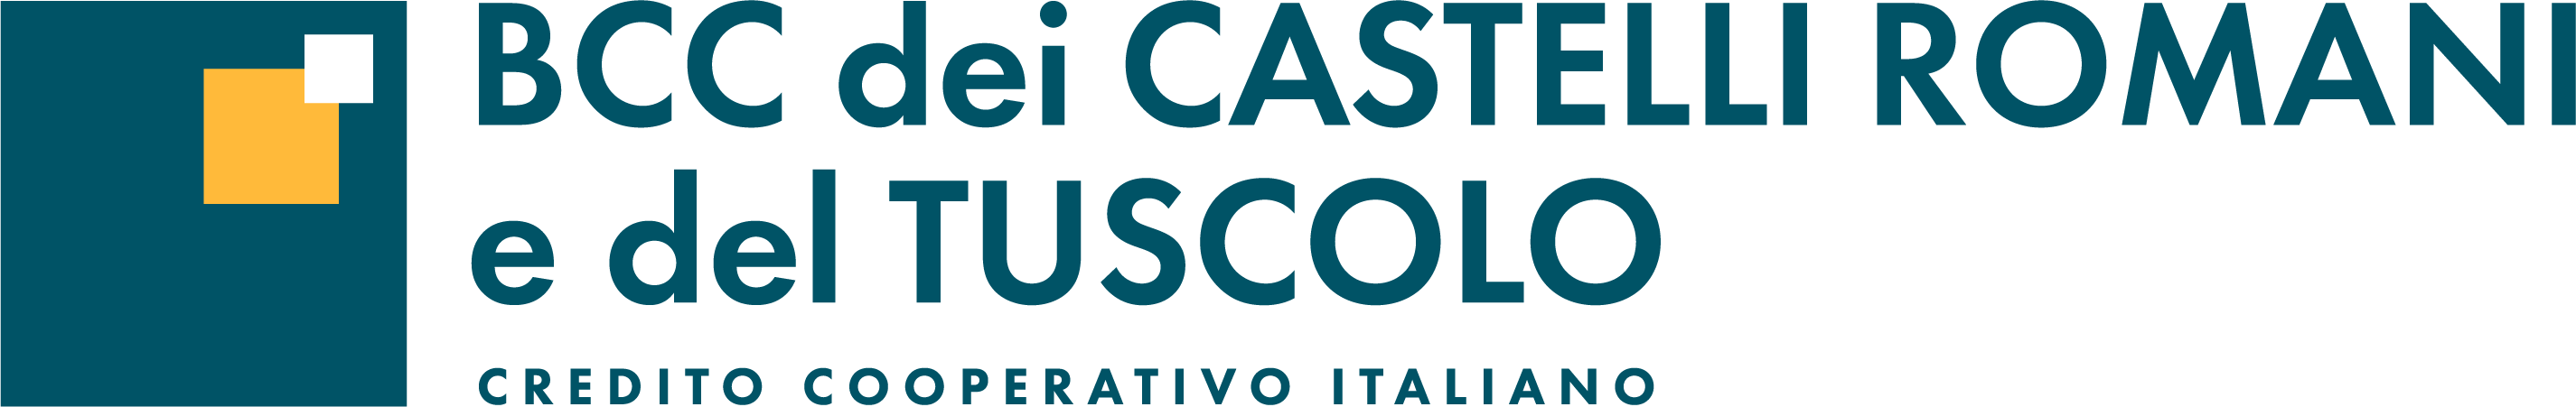 Logo BCC dei Castelli Romani e del Tuscolo